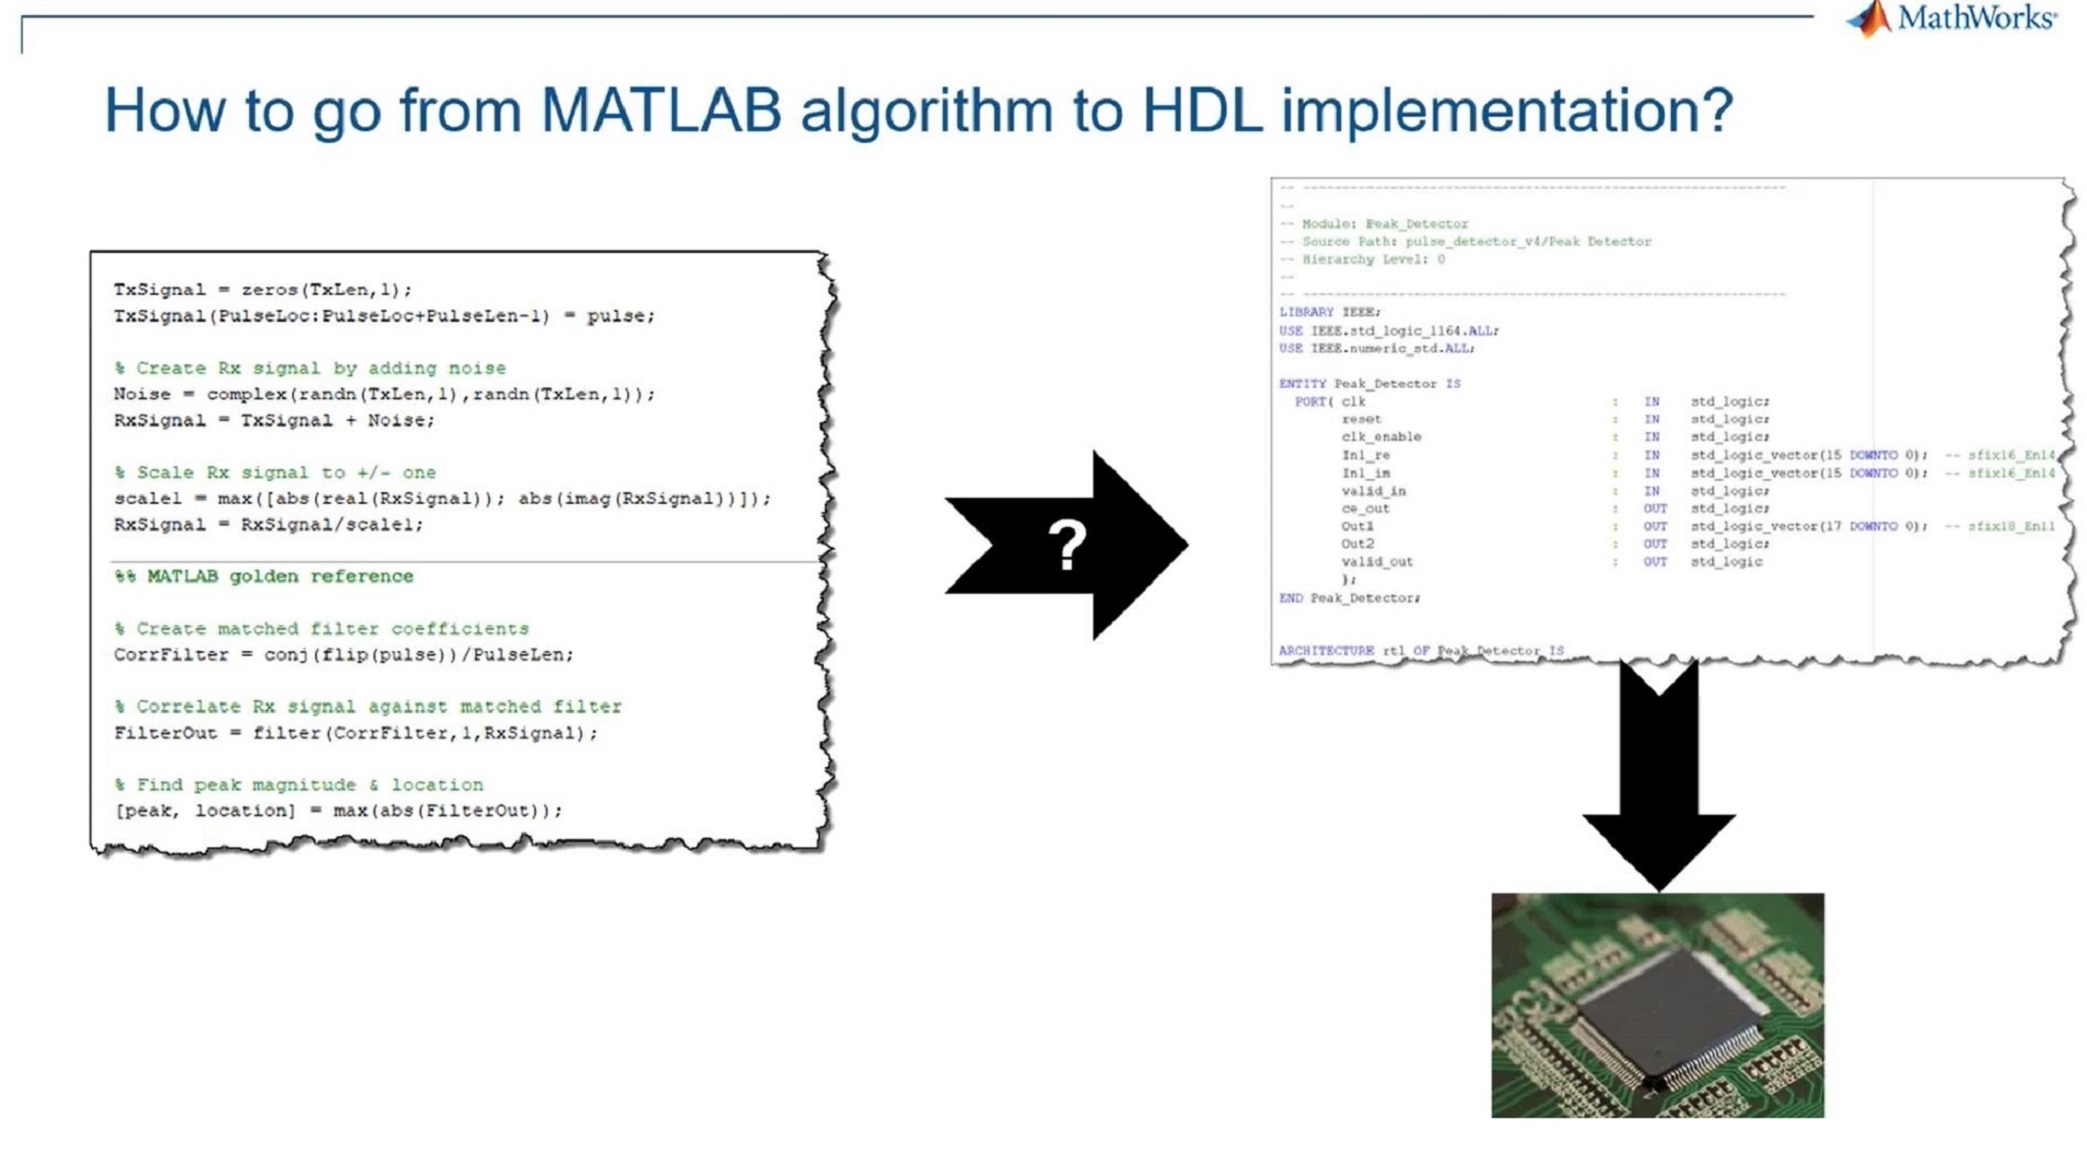 利用MATLAB和Simulink的优势，将算法部署到硬件上。万博1manbetx